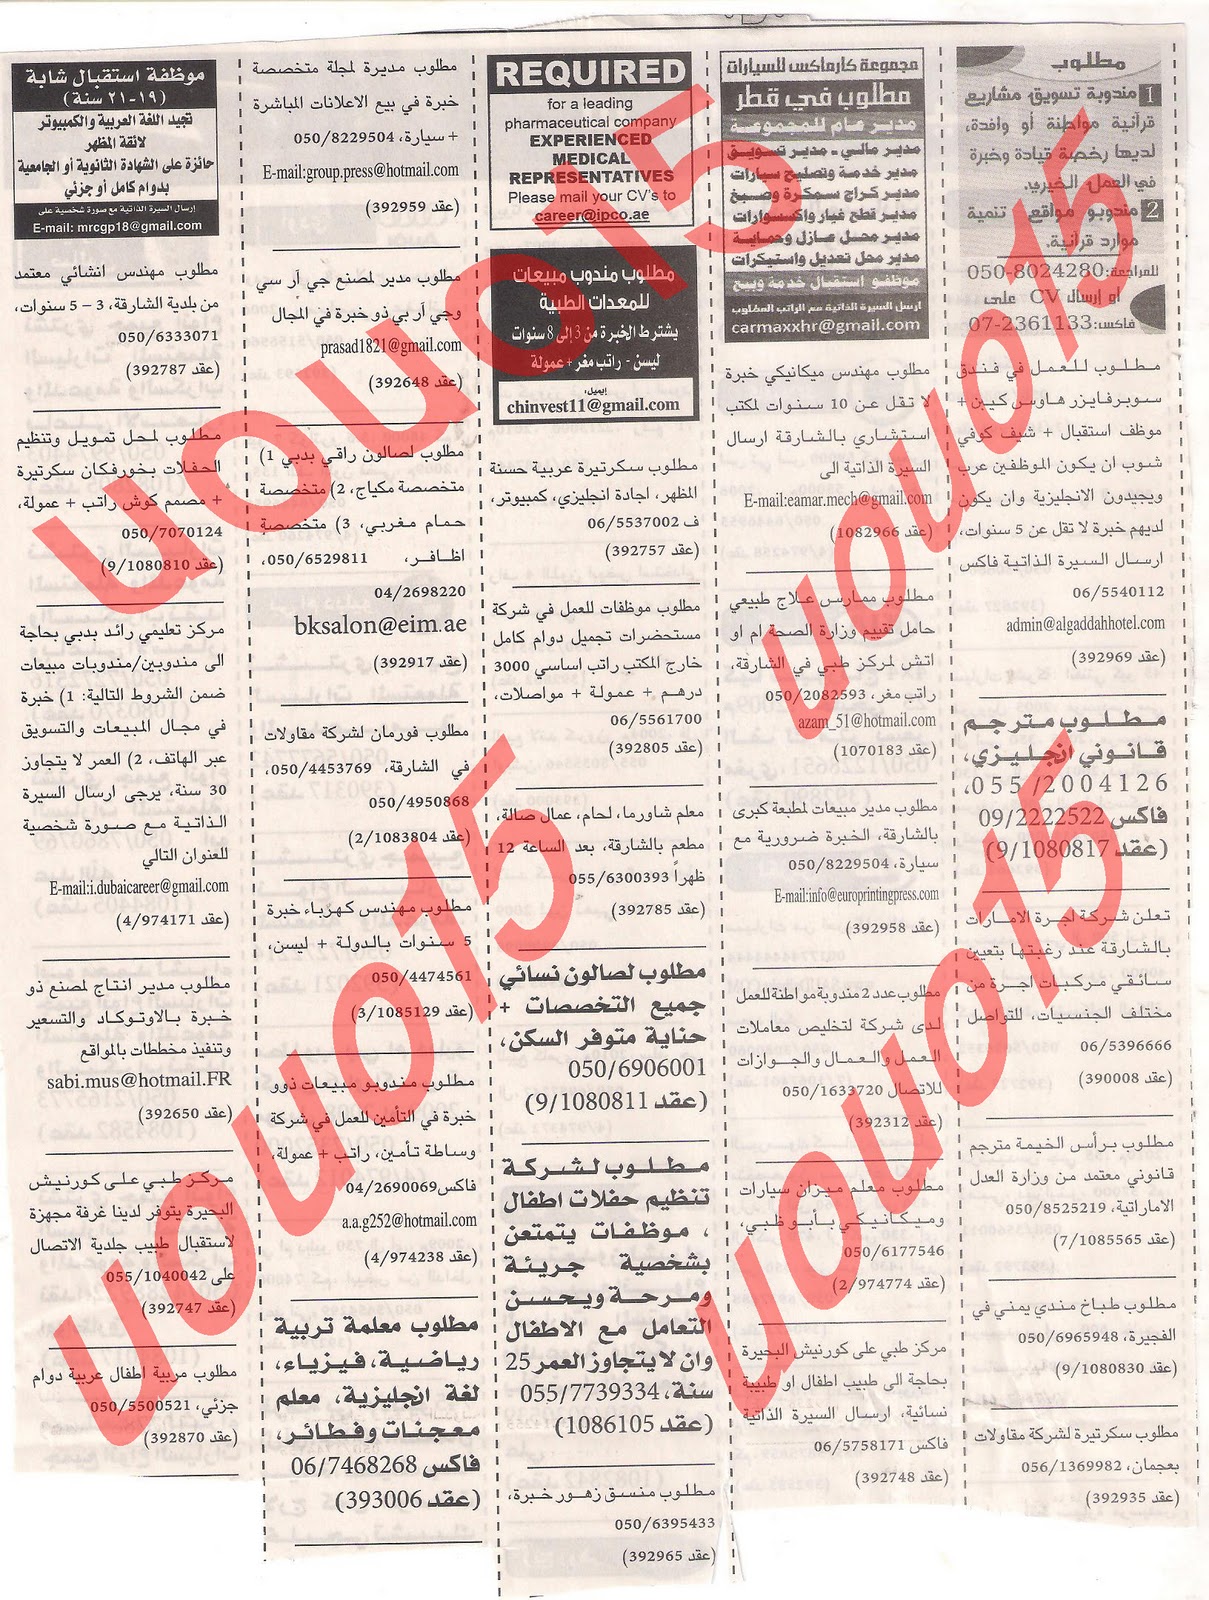 وظائف شاغرة من جريدة الخليج الثلاثاء 20\12\2011  Picture+010